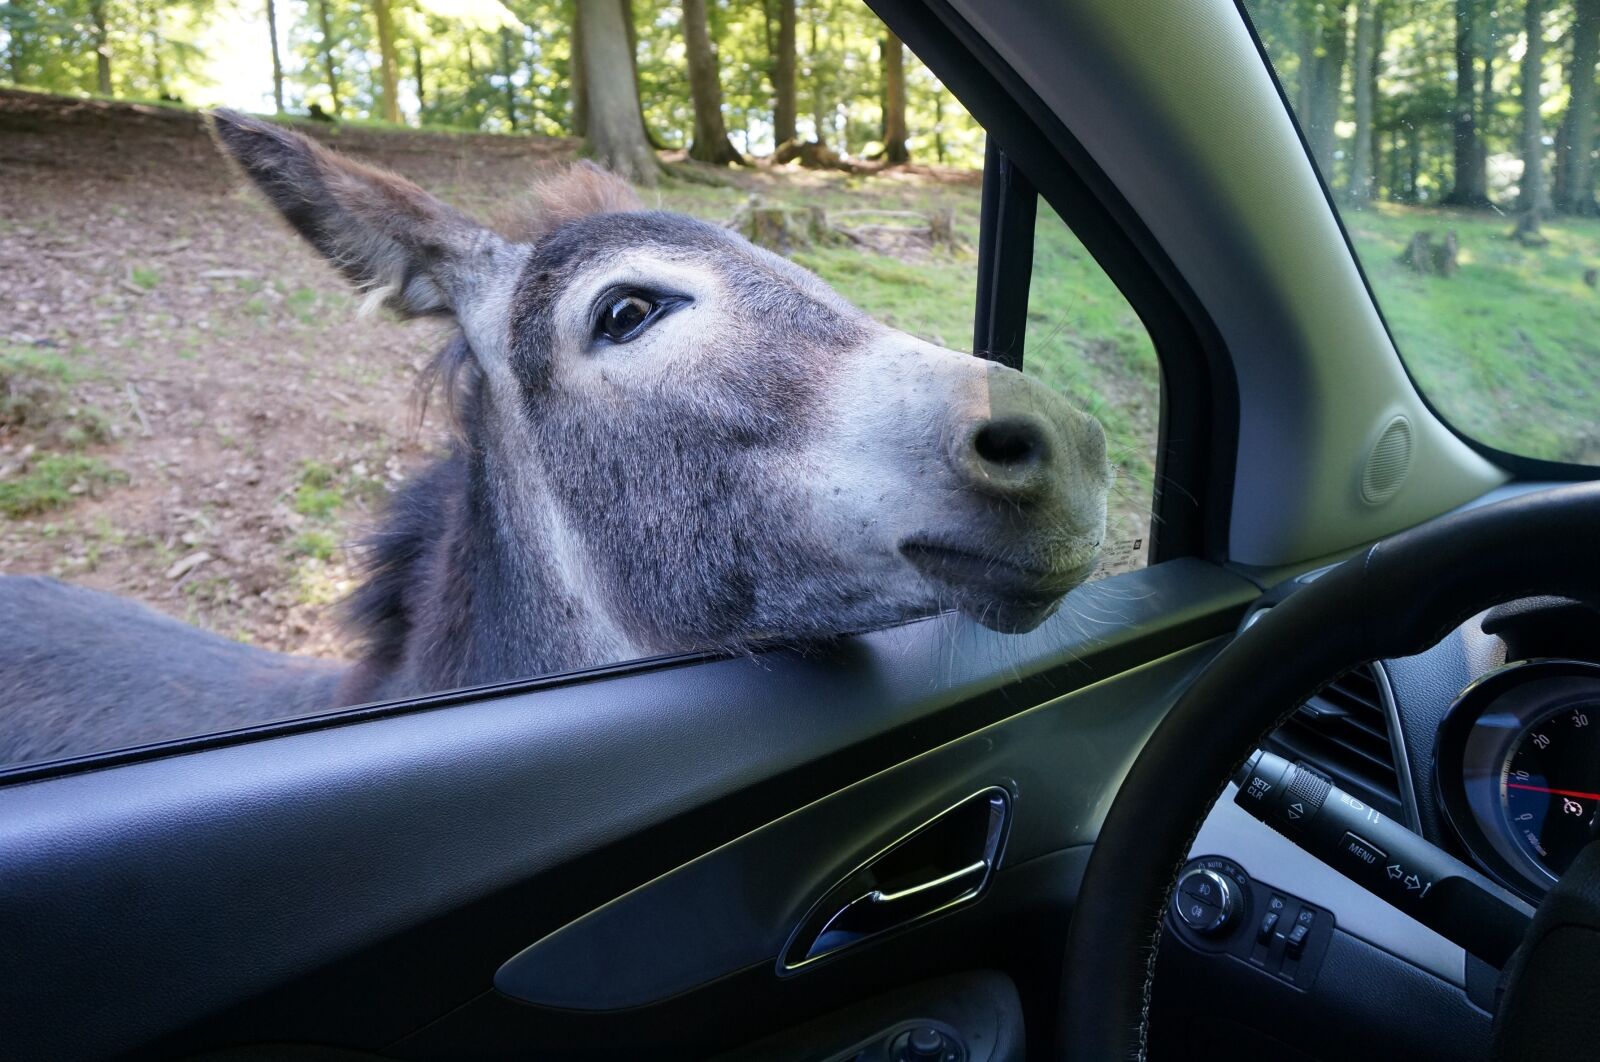 Sony Alpha NEX-5R sample photo. Donkey, auto, zoo photography